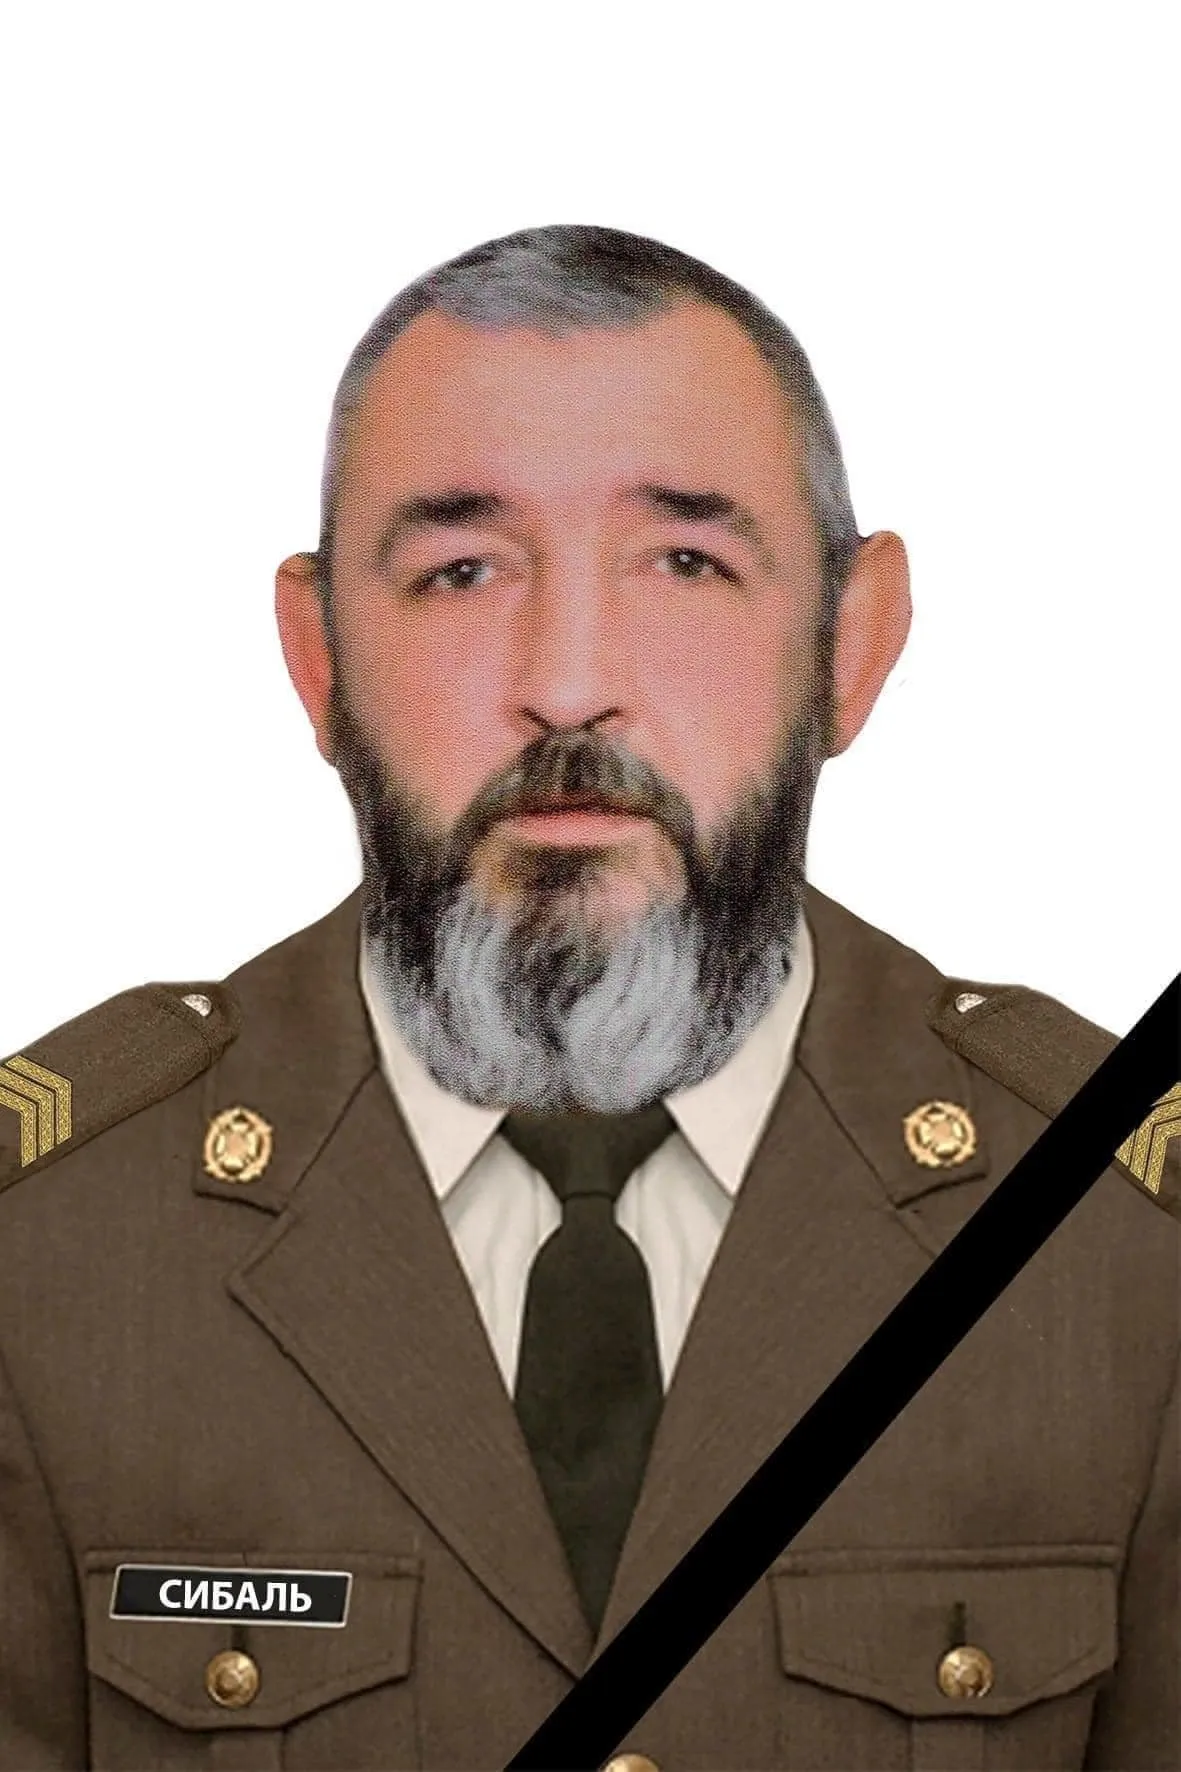 Герой Виктор Сибаль погиб в районе н.п. Опытное